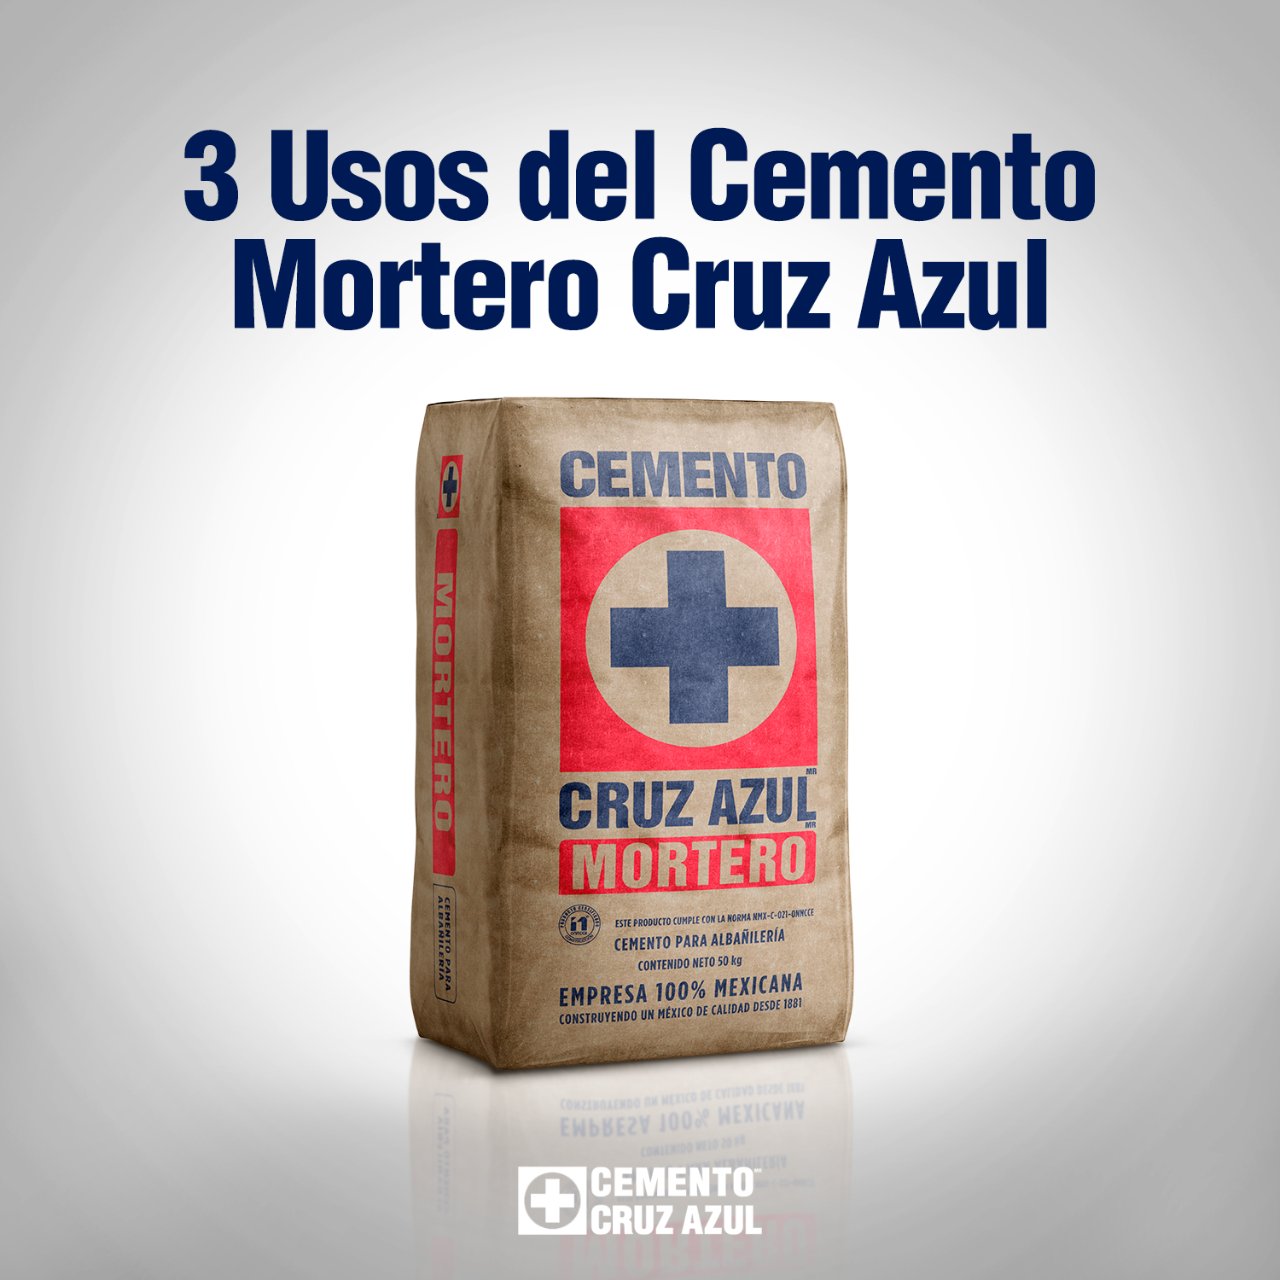 Cemento Cruz Azul ® on X: El Cemento Mortero Cruz Azul, también llamado  Cemento de Albañilería, es una gran solución para la construcción gracias a  su costo accesible y alto desempeño. #SabemosDeMortero #